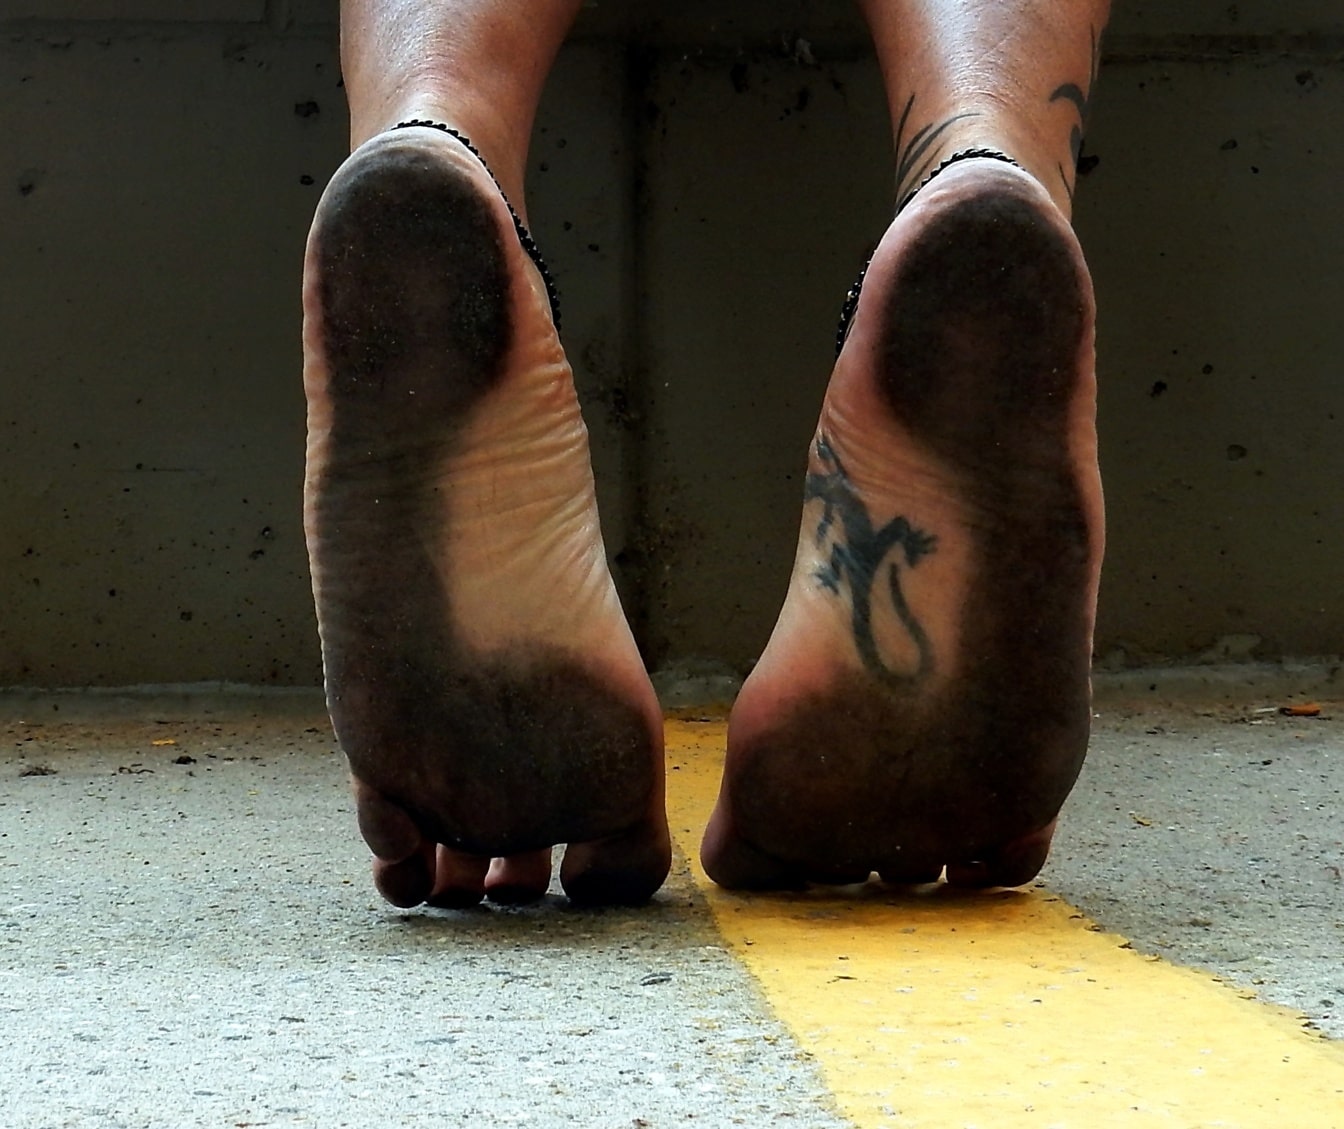 Cận cảnh đôi chân trần của một người đàn ông đứng trên ngón chân với đế bẩn